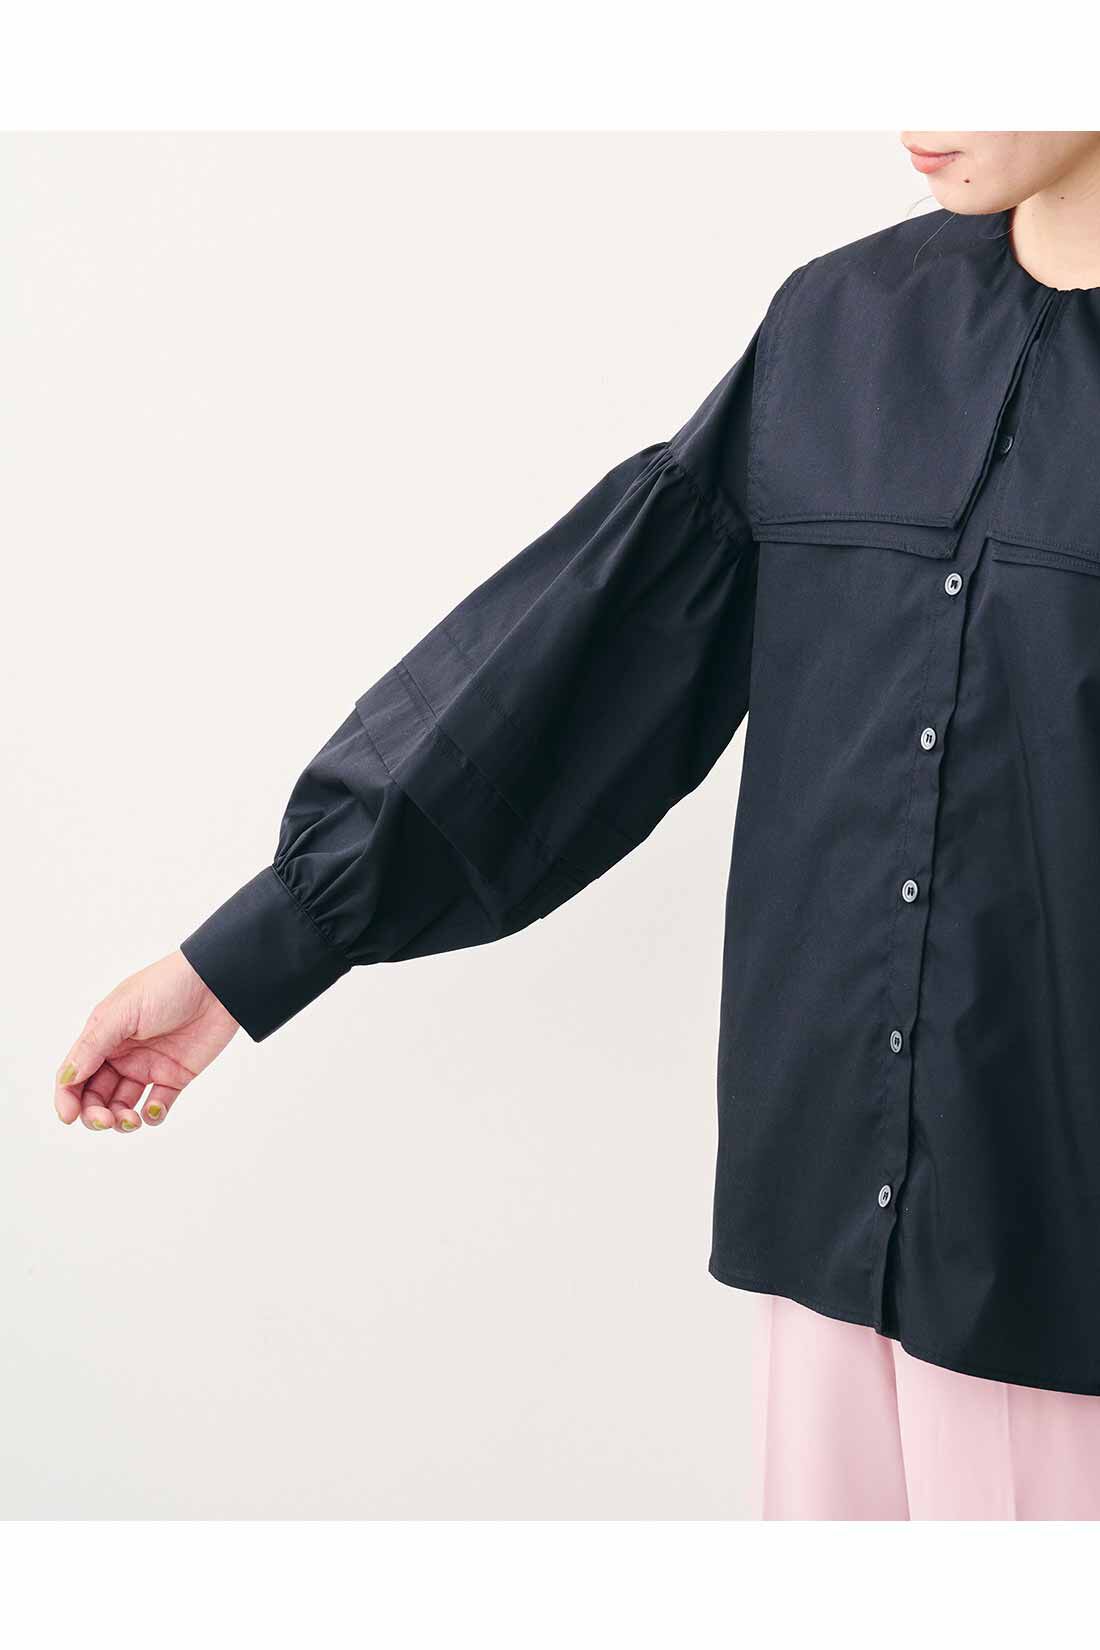 【新品】MEDE19F(メデジュウキュウ)ピューリタンカラーシャツ ブラック3L